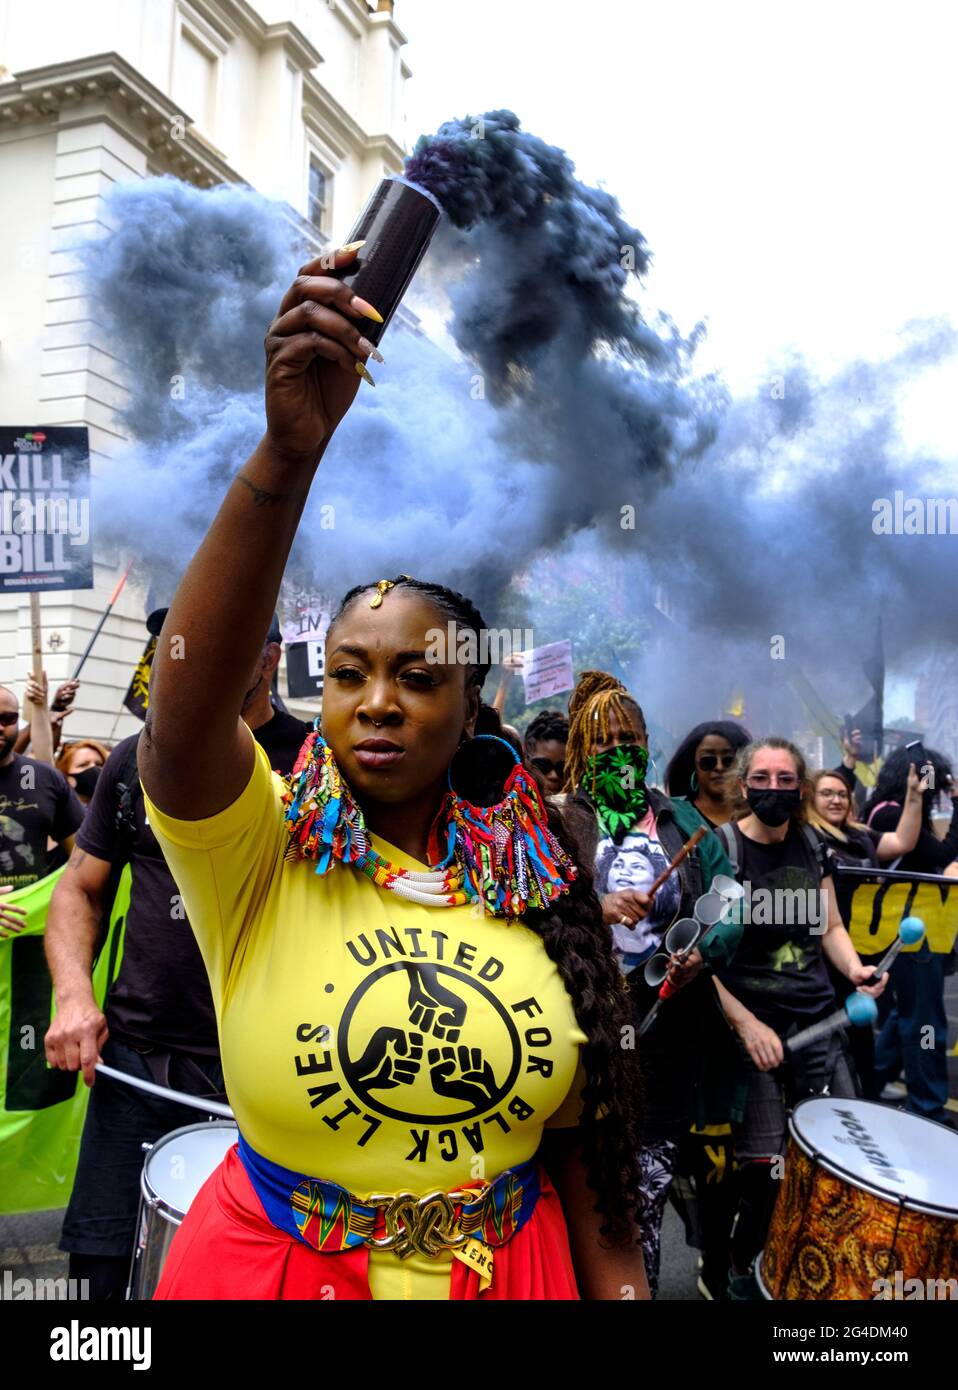 Marvina Newton guida una dimostrazione di Black Lives Matter / Kill the Bill lotta contro l'uso del potere della polizia come mezzo per silenziare le voci nere, in risposta ai recenti assassinii di persone nere da parte della polizia. Maggio 2021 Foto Stock